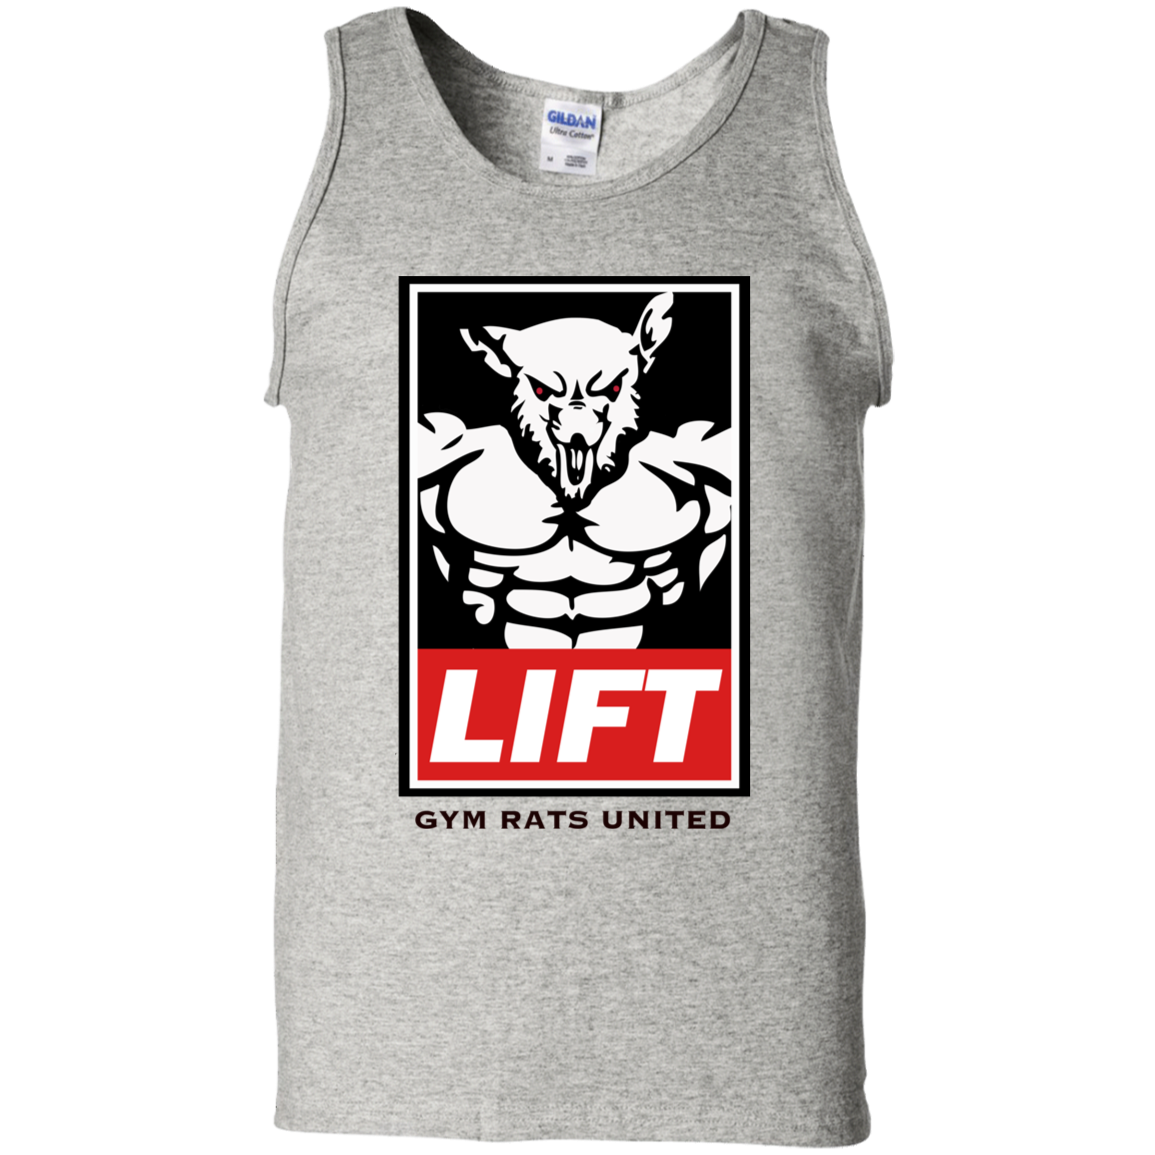 Camiseta sin mangas blanca Gym Rats United Lift – GYMRATSUNITED